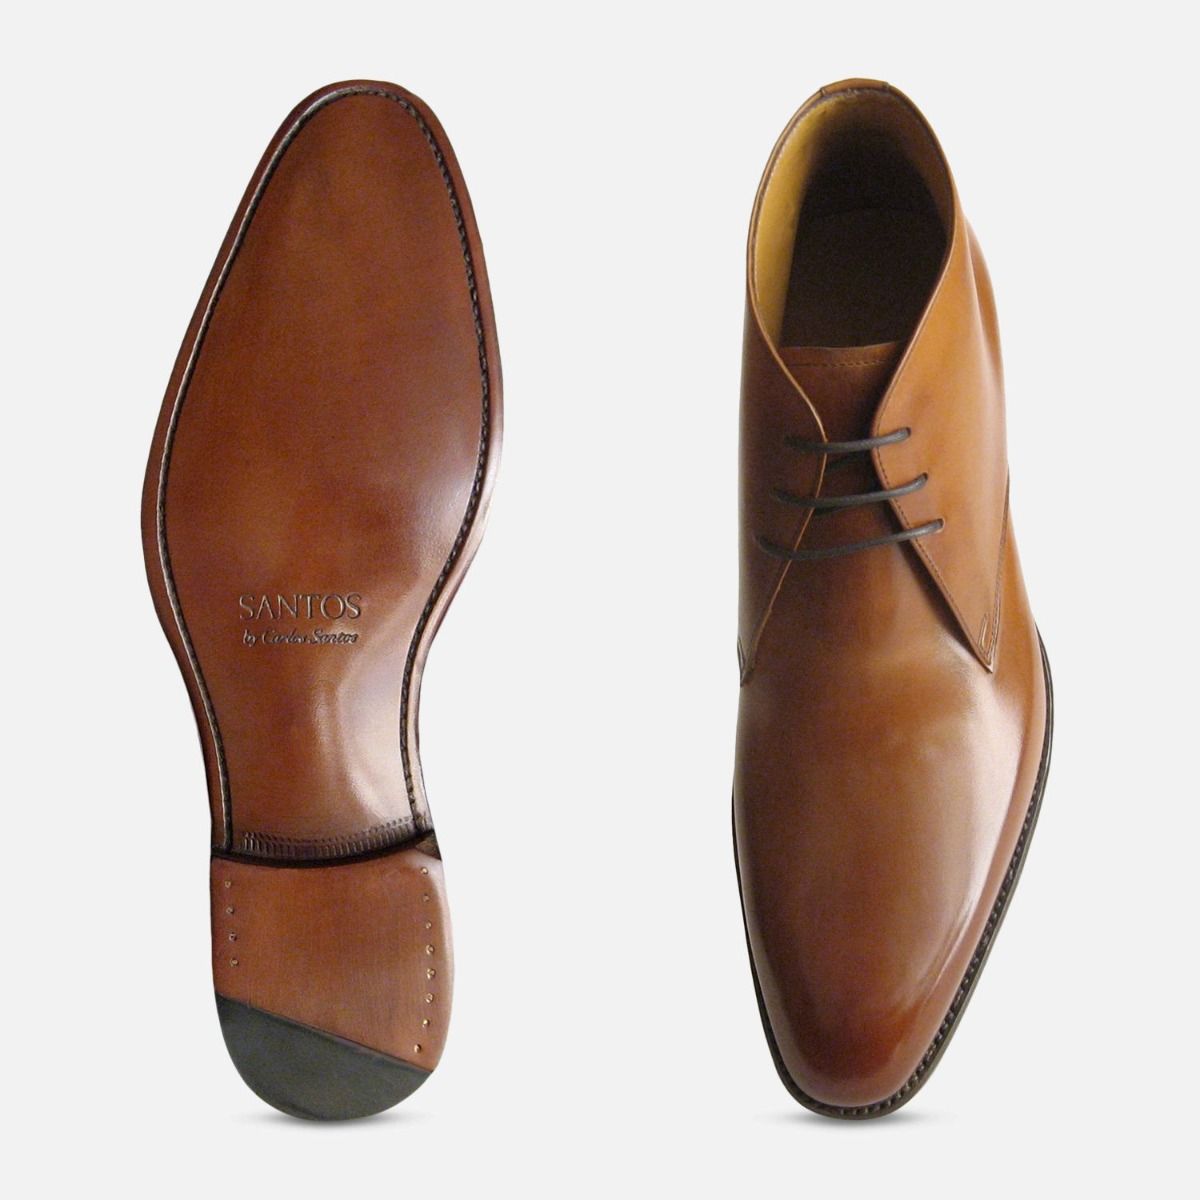 mahogany color shoes